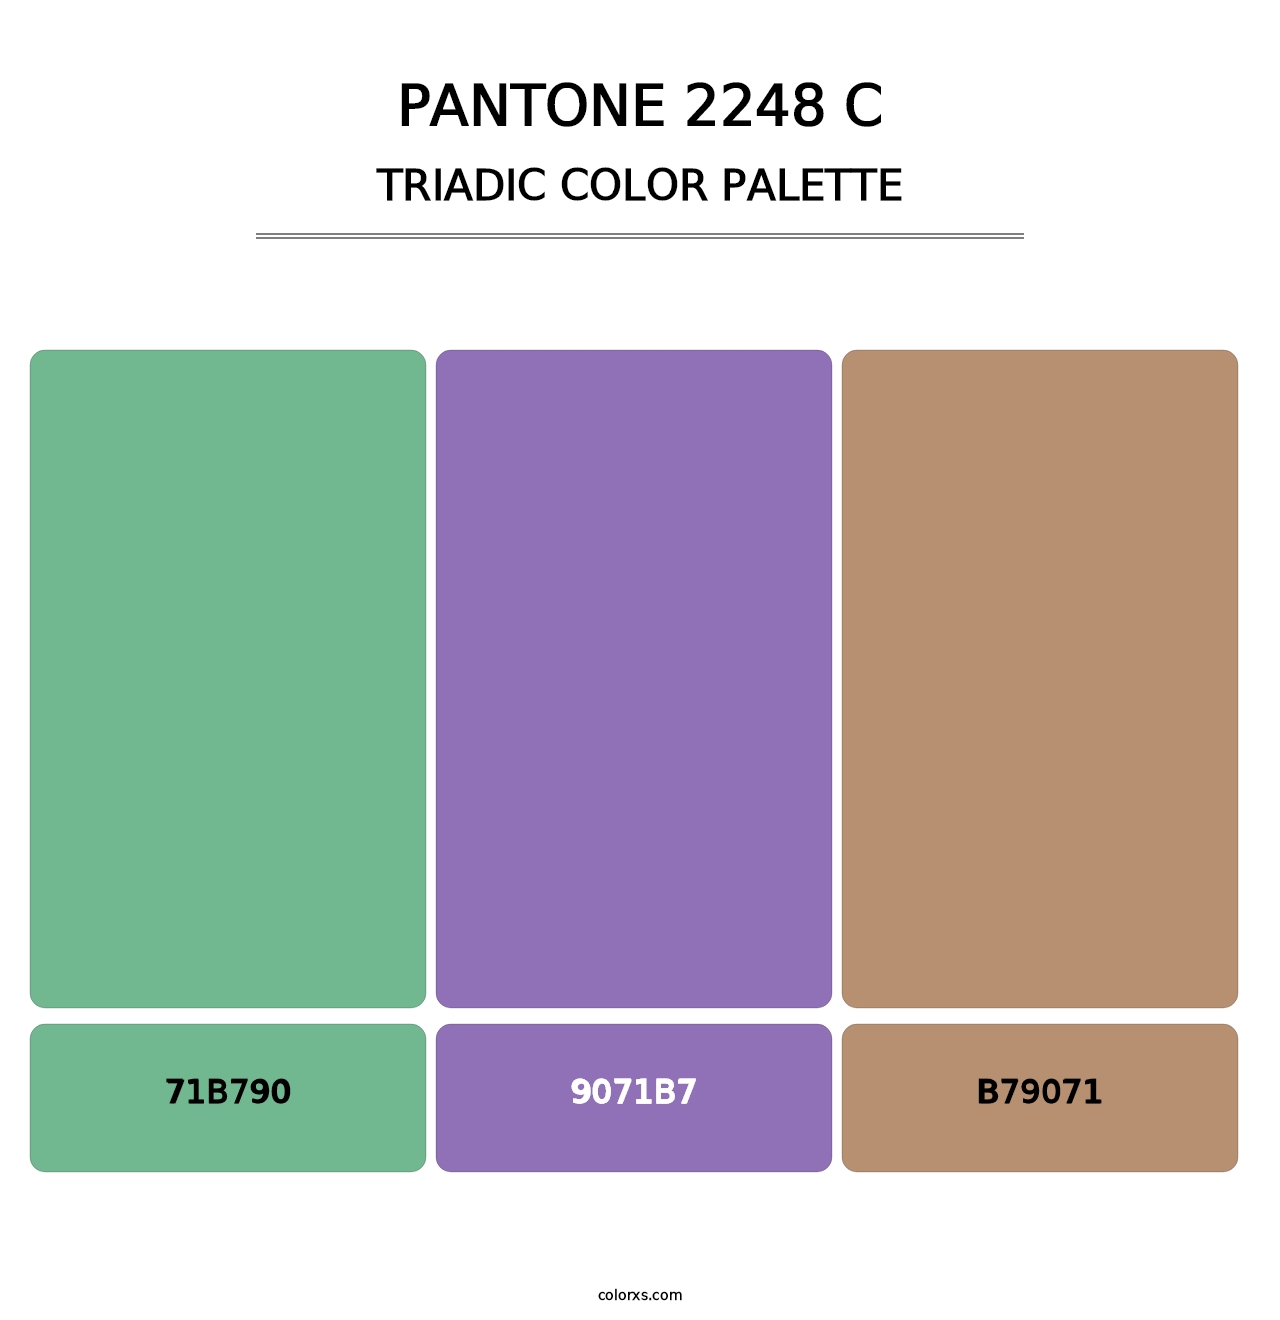 PANTONE 2248 C - Triadic Color Palette